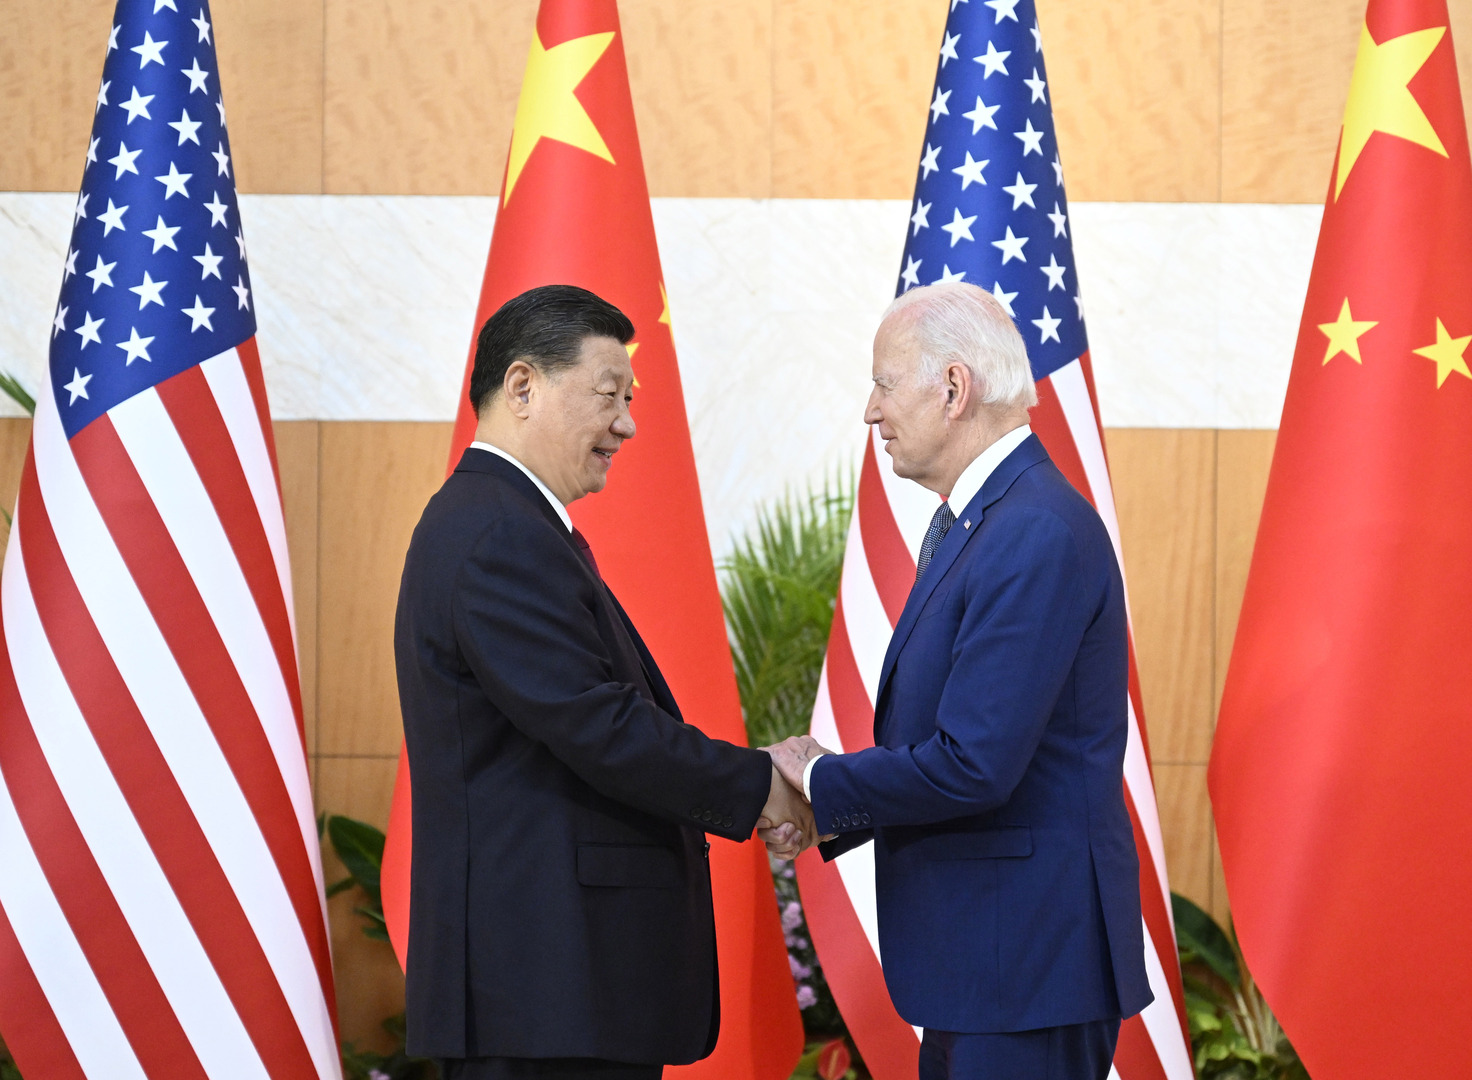 بايدن يؤكد لشي أن التنافس بين الولايات المتحدة والصين لا يجب أن يؤدي إلى صراع (فيديو)